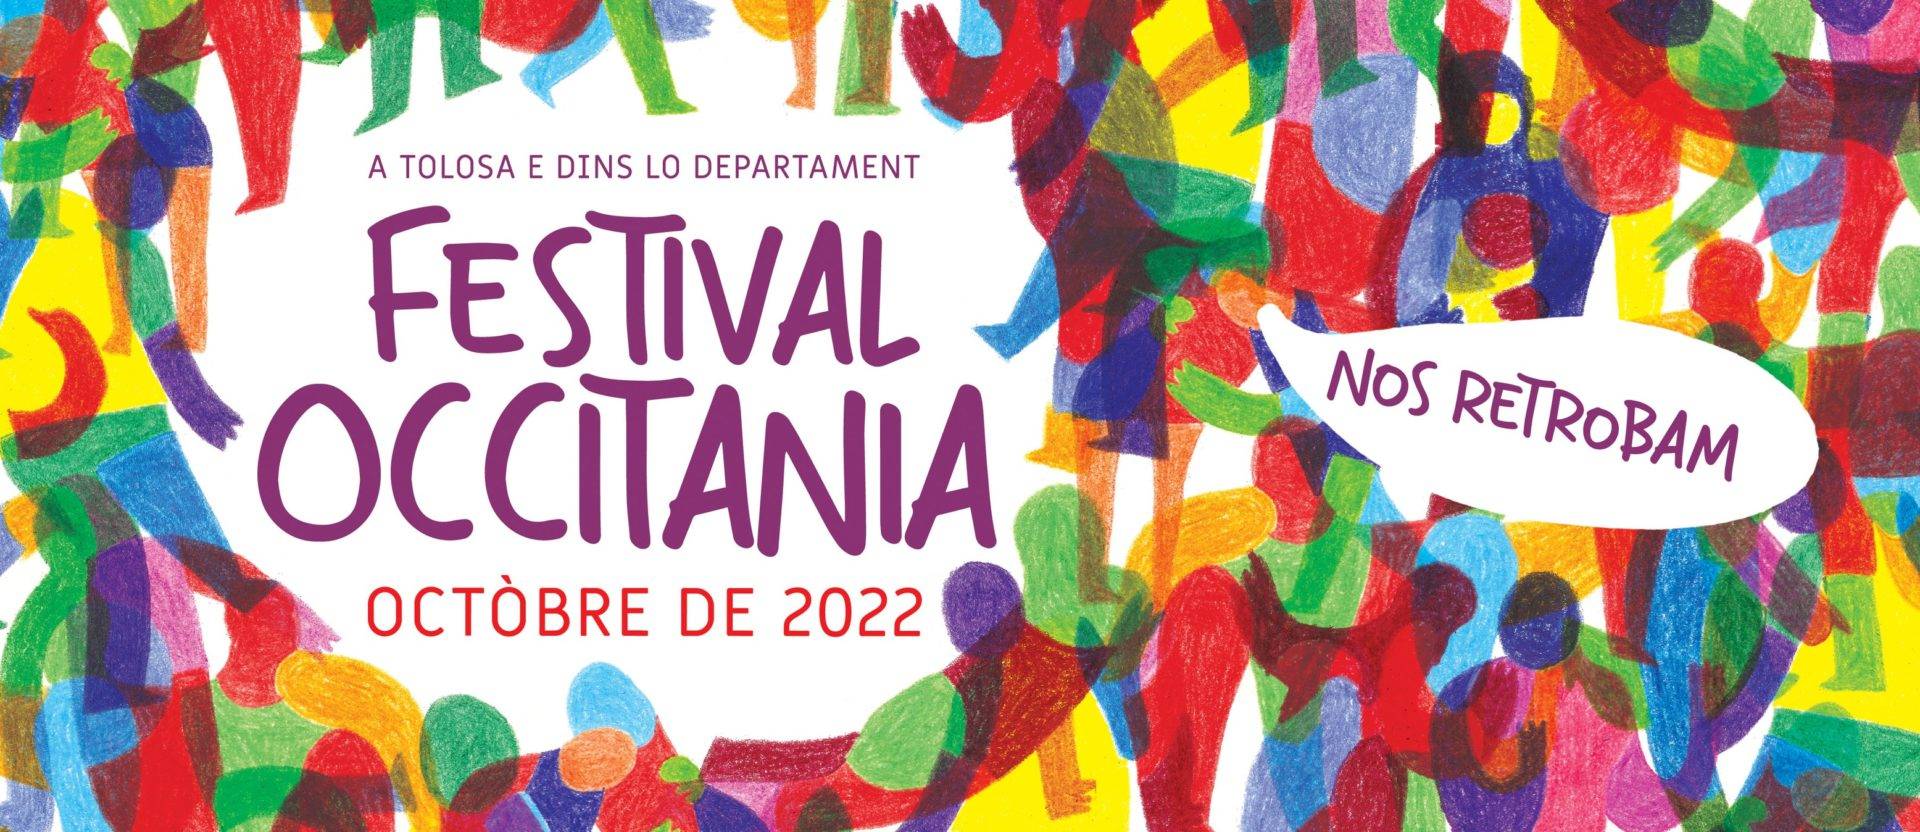 Bandiera Festenal Occitània 2022